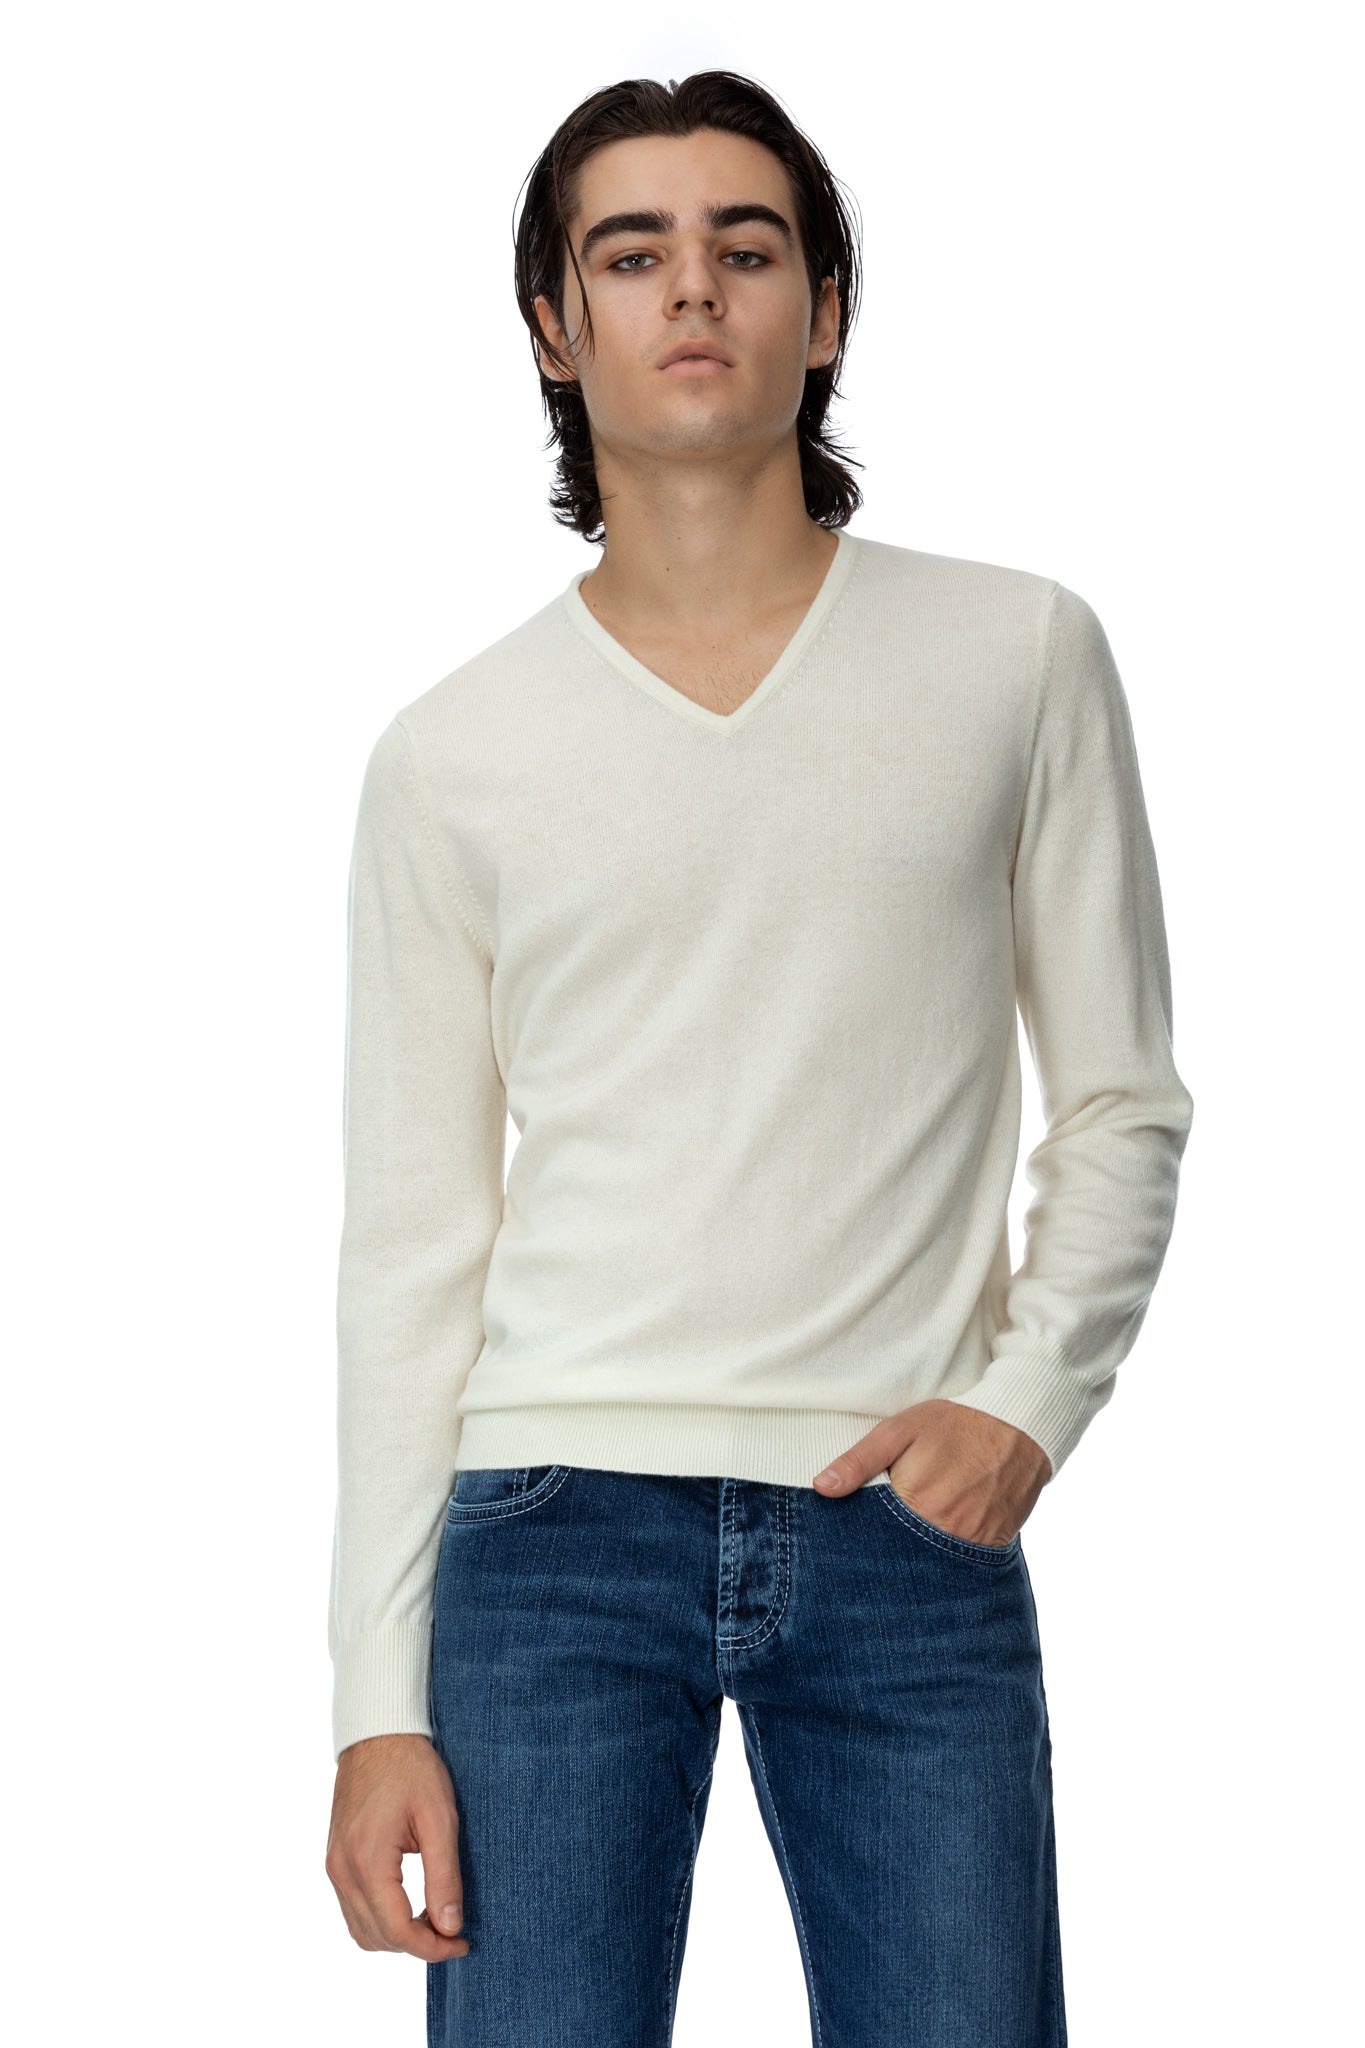 メリノウールとカシミヤで作られたVネックの白いセーター